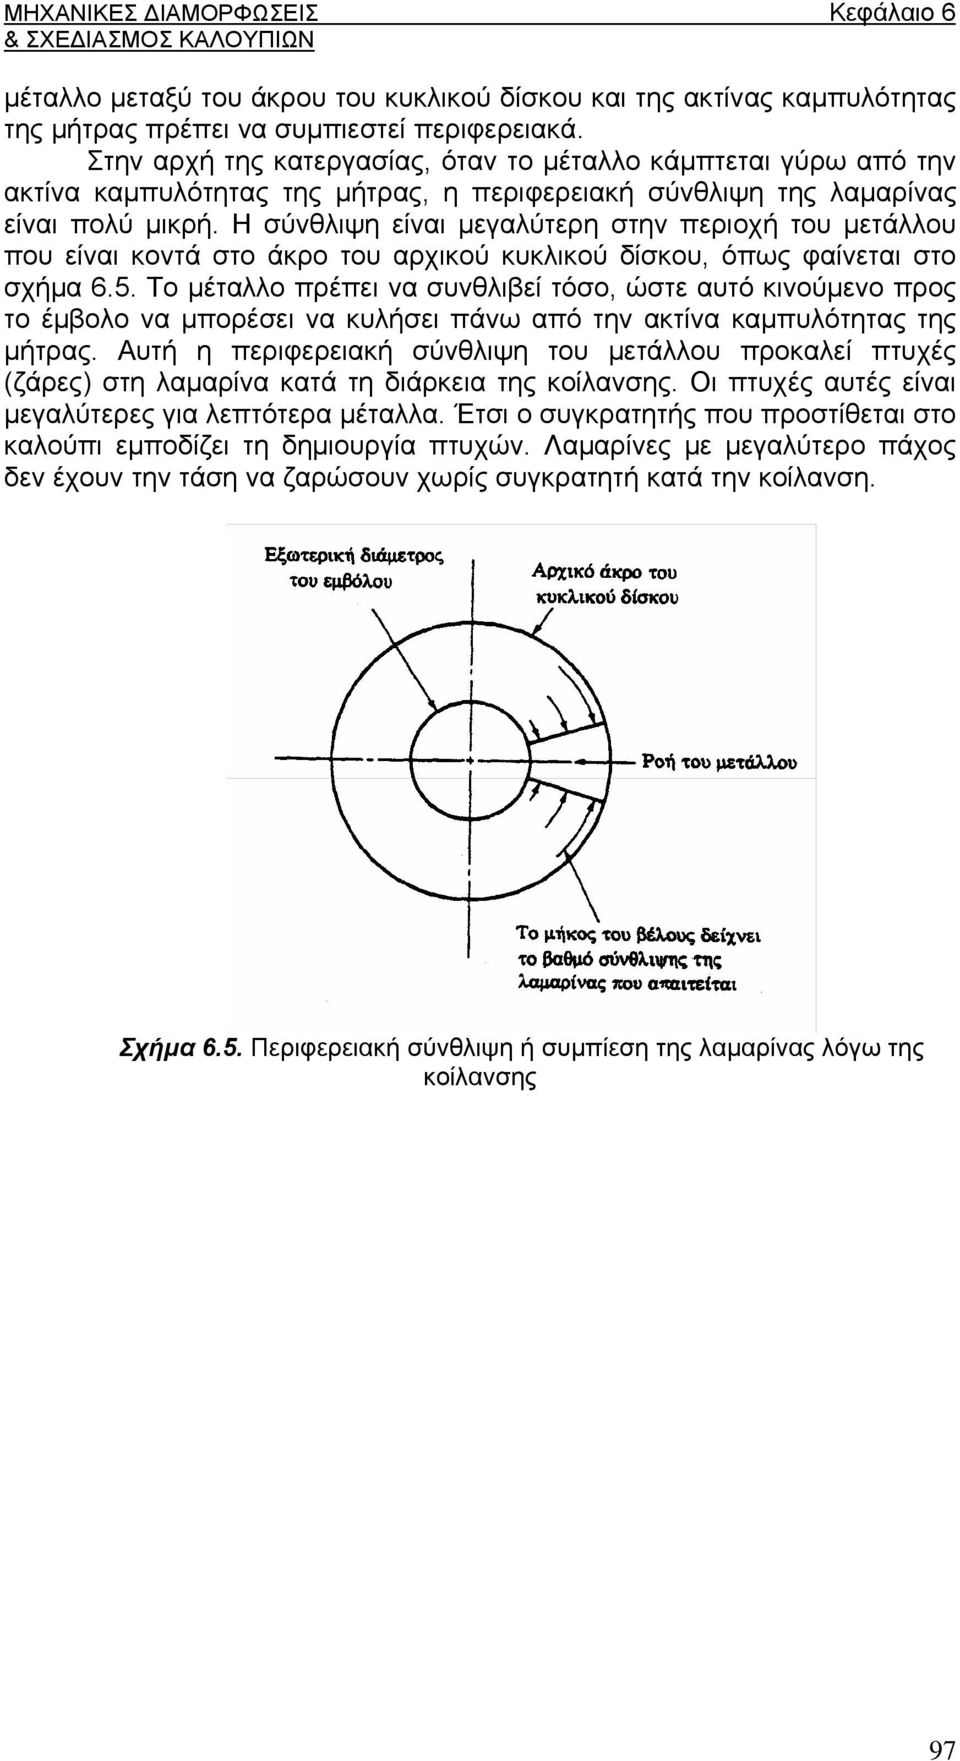 Η σύνθλιψη είναι μεγαλύτερη στην περιοχή του μετάλλου που είναι κοντά στο άκρο του αρχικού κυκλικού δίσκου, όπως φαίνεται στο σχήμα 6.5.